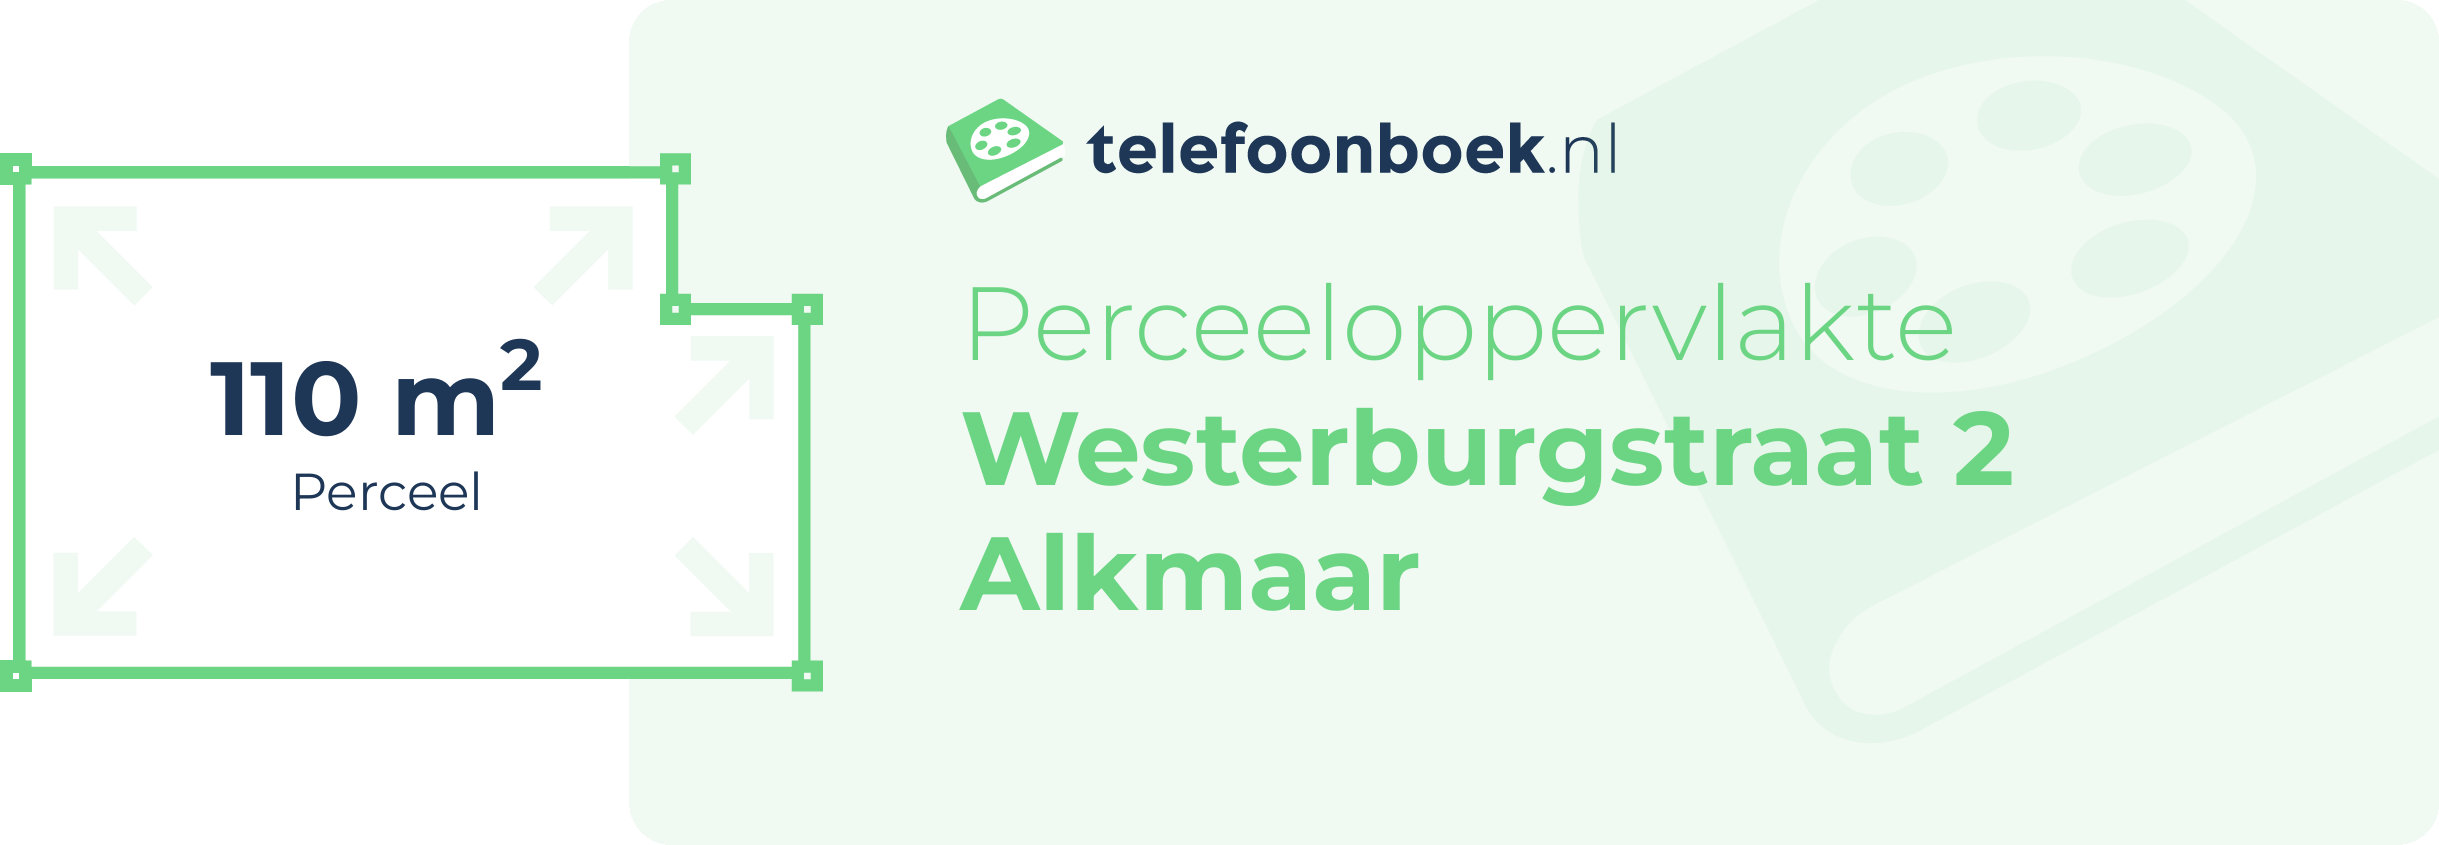 Perceeloppervlakte Westerburgstraat 2 Alkmaar